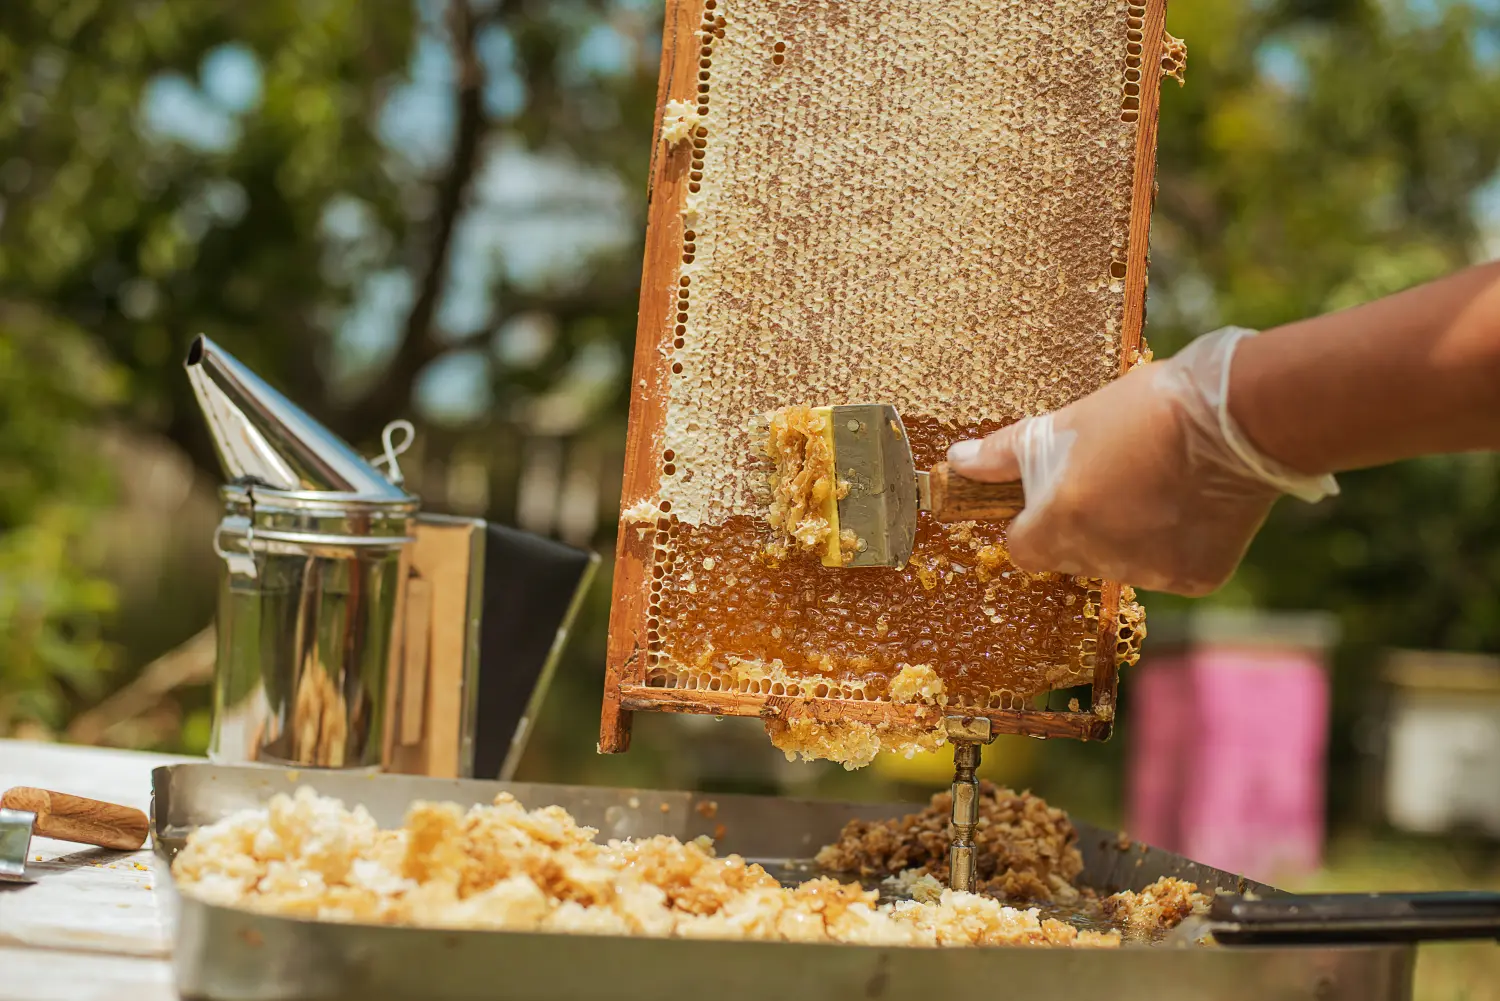 Imker sammelt den Honig ein